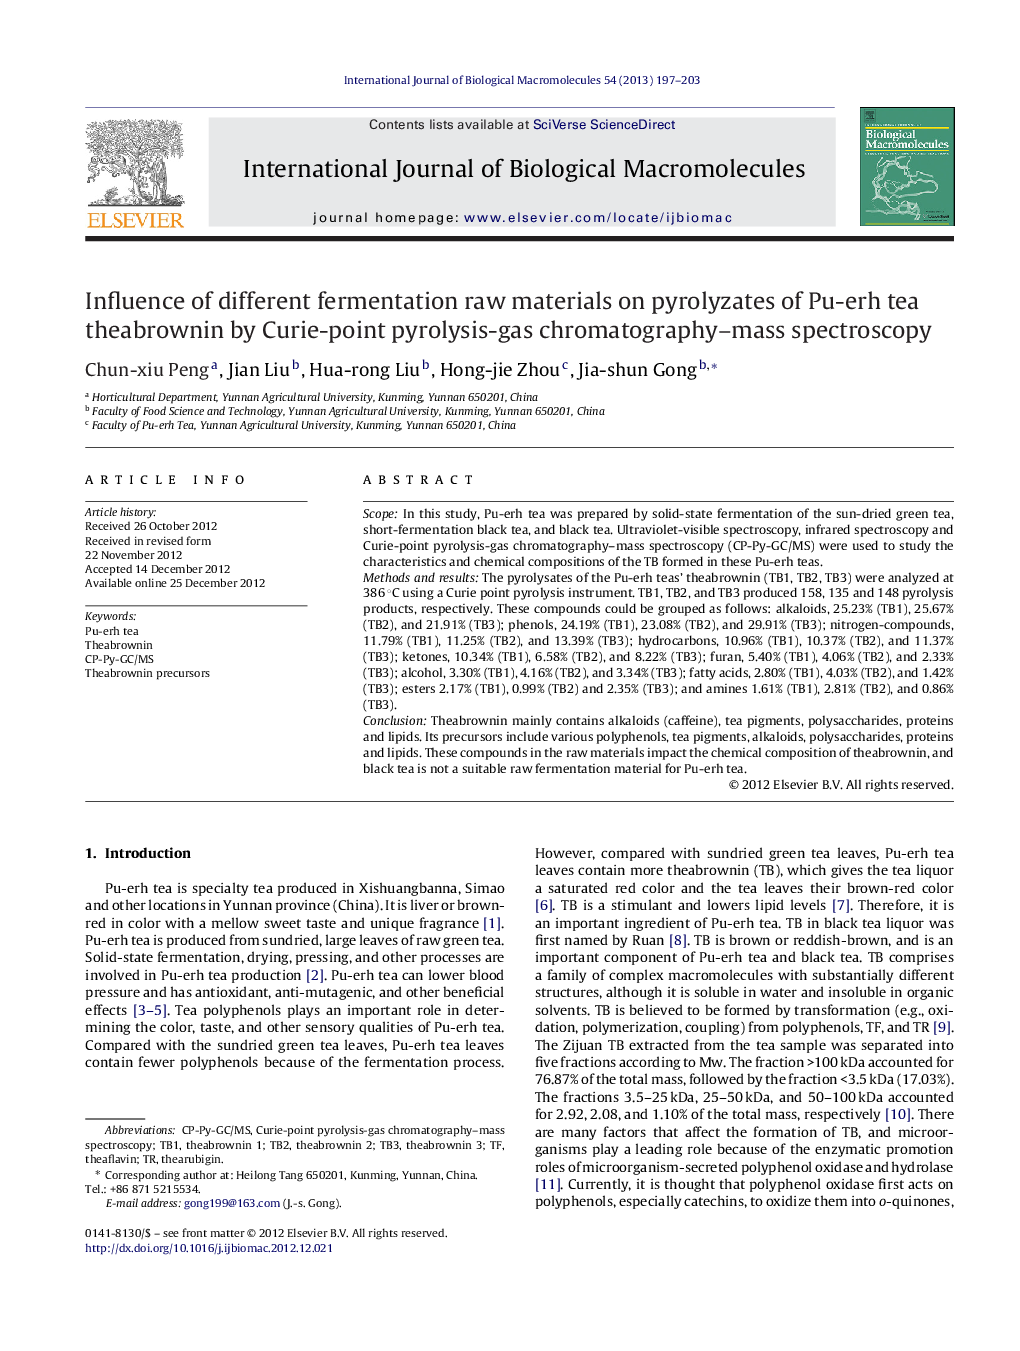 تأثیر ماده خام تخمیری مختلف بر پریولزاتهای چای پره هرم توسط کروی - طیف سنجی جرم کروماتوگرافی گاز پریروز - گاز 